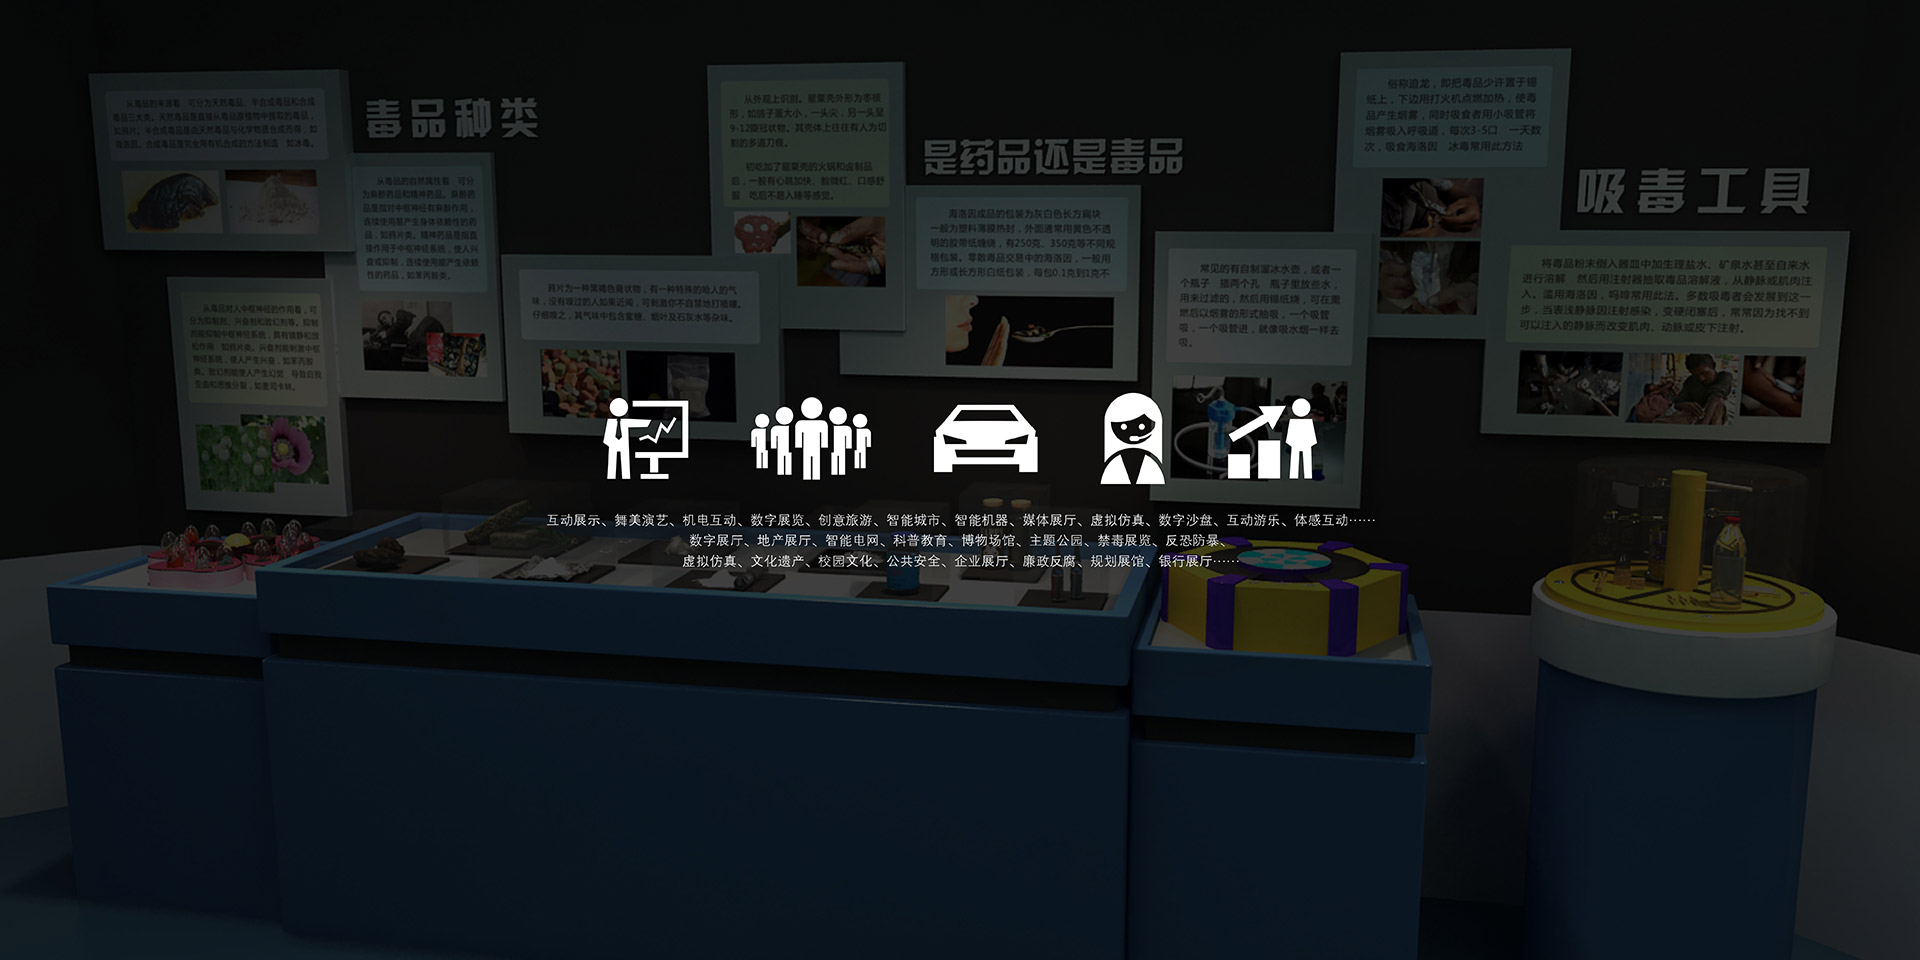 石渠地震结绳展示,石渠地震7D互动游戏影院,石渠地震LED点阵地幕,石渠地震发生台,石渠地震VR安全教育,